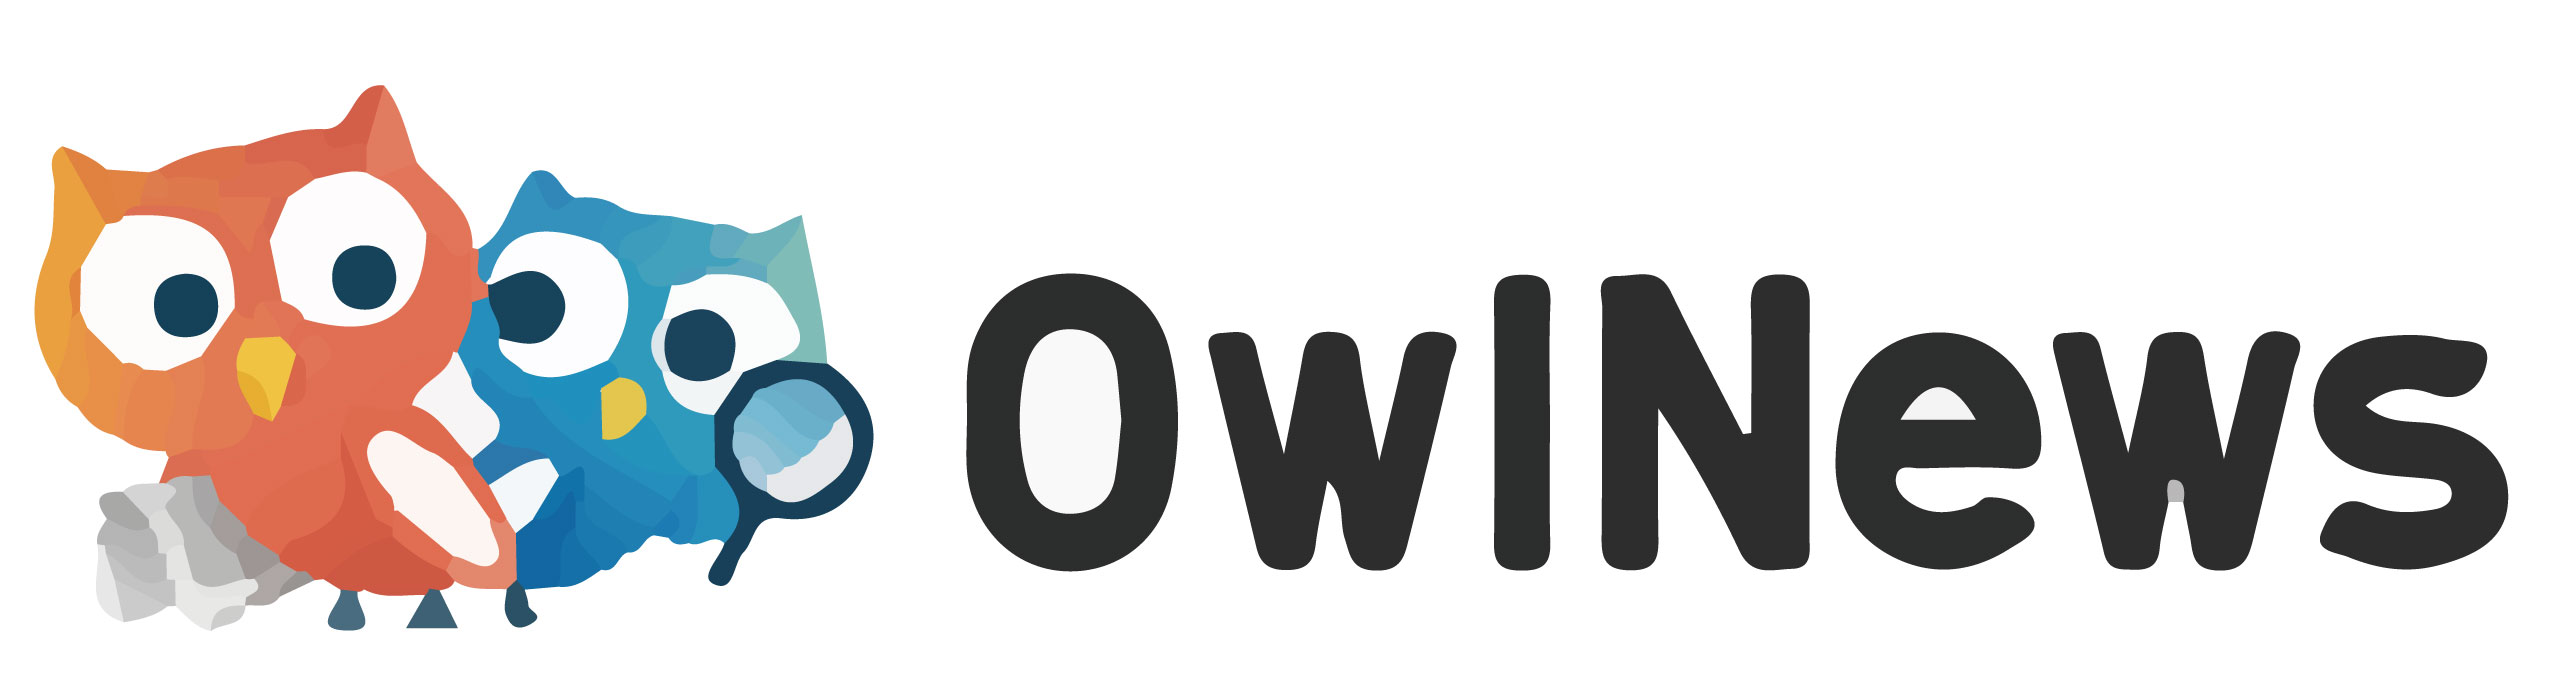 OwlNews,媒體報導,減齡抗發炎,健康販賣所,東京風采